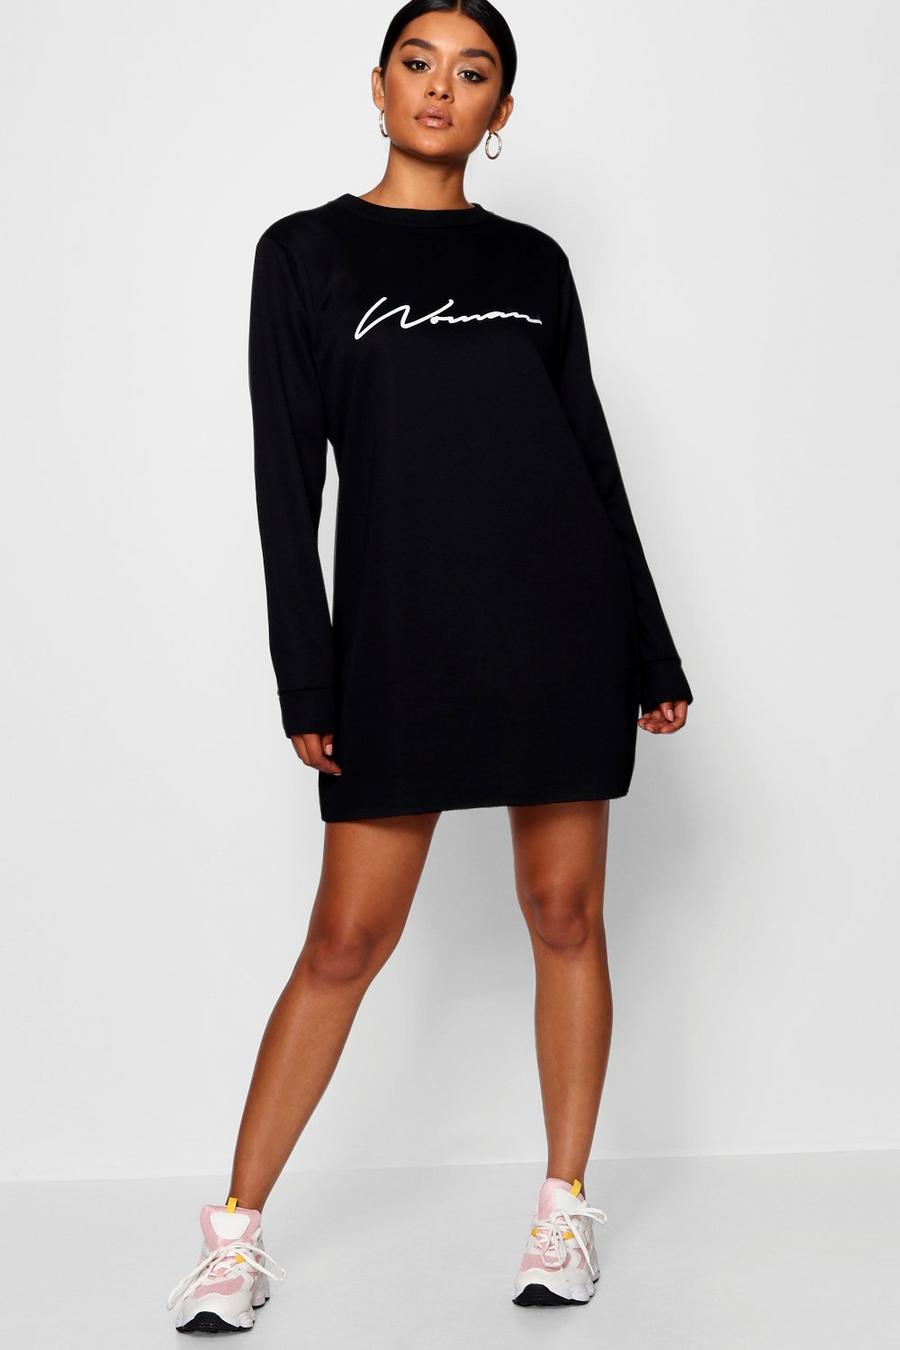 Vestido estilo suéter de punto de rizo con eslogan “Woman” image number 1